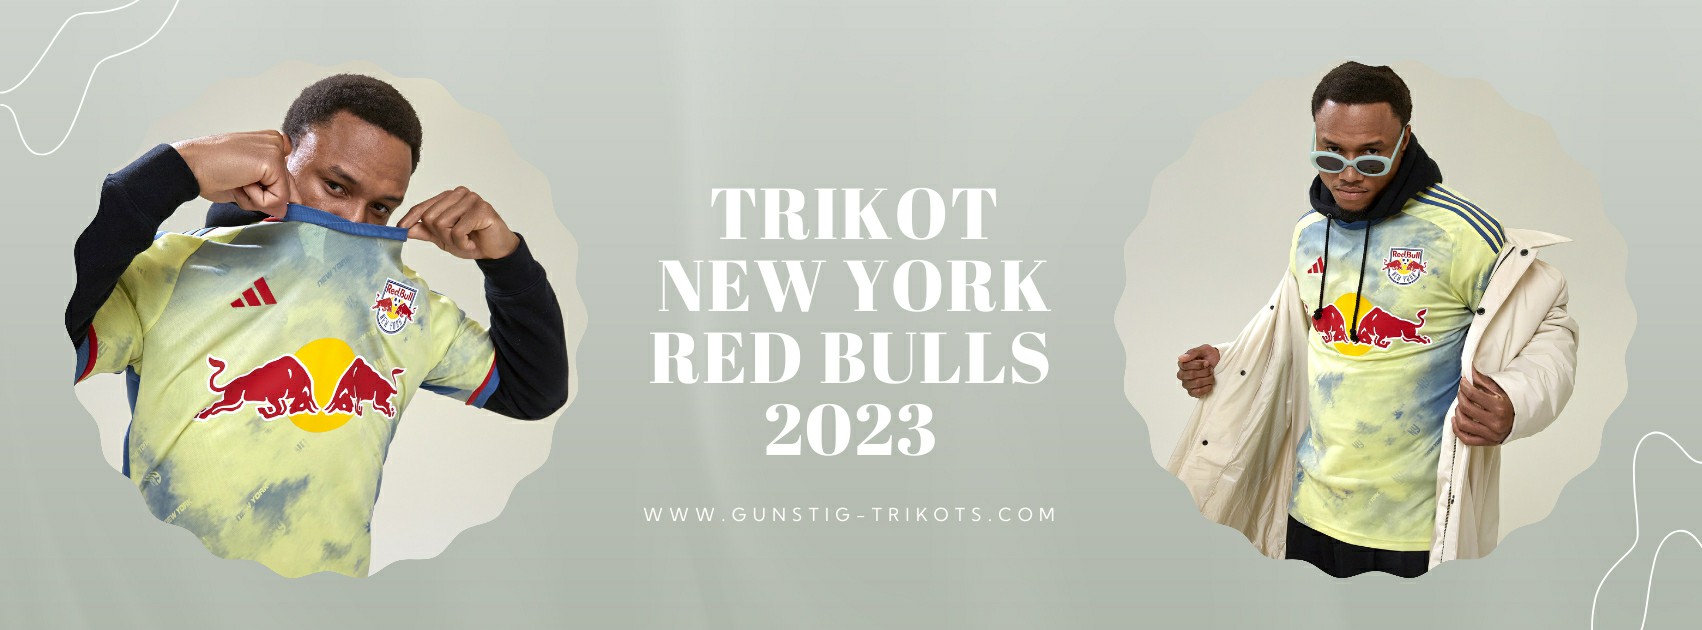 New York Red Bulls Trikot 2023-2024